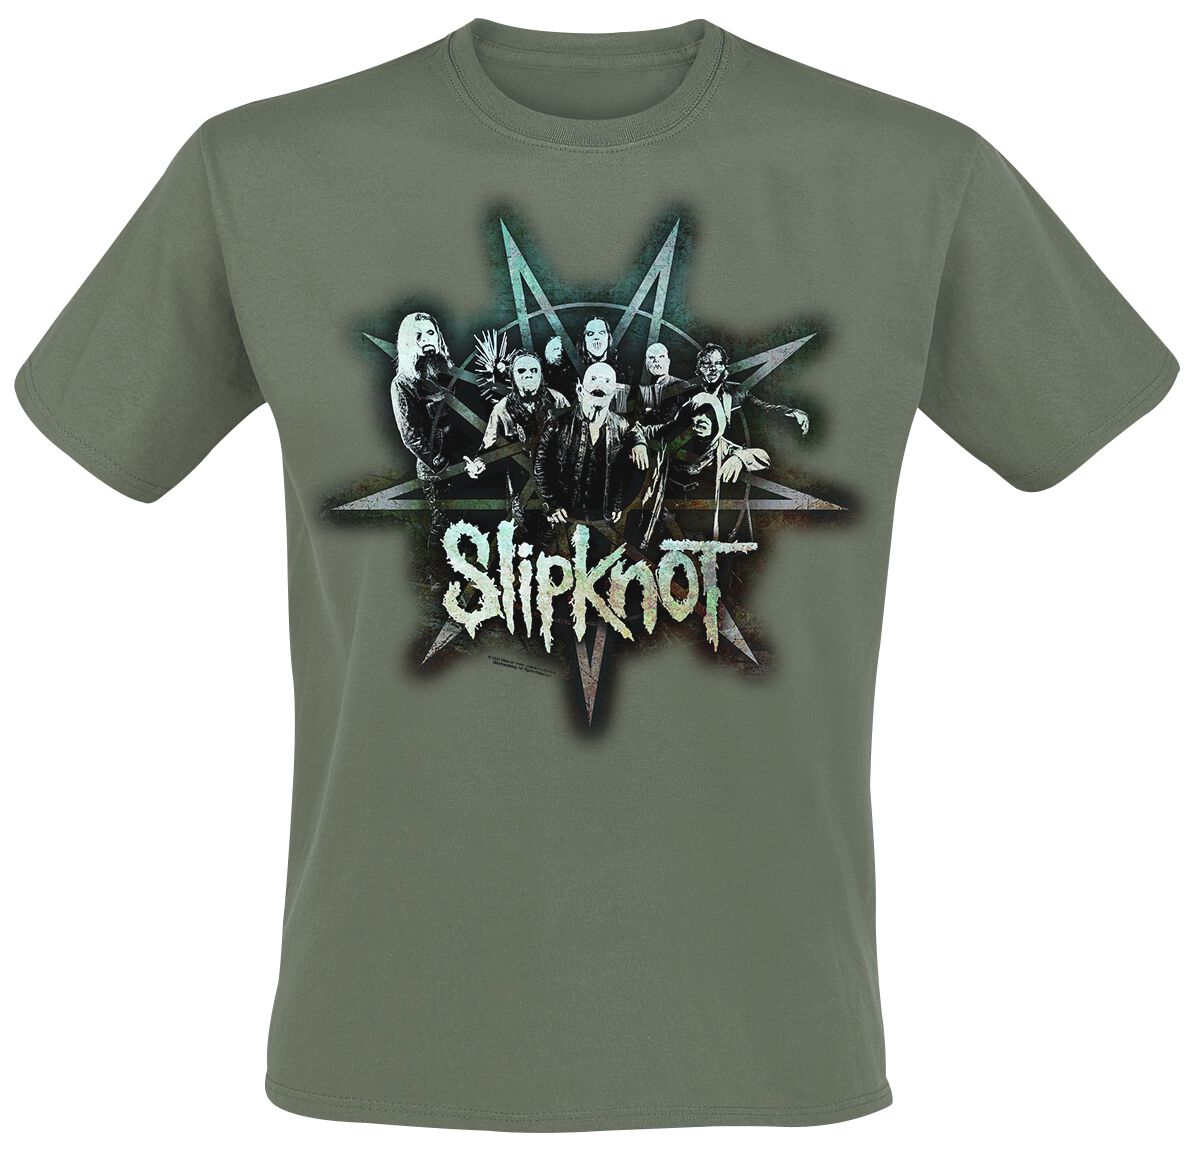 Slipknot - T-Shirt Group Star Olive